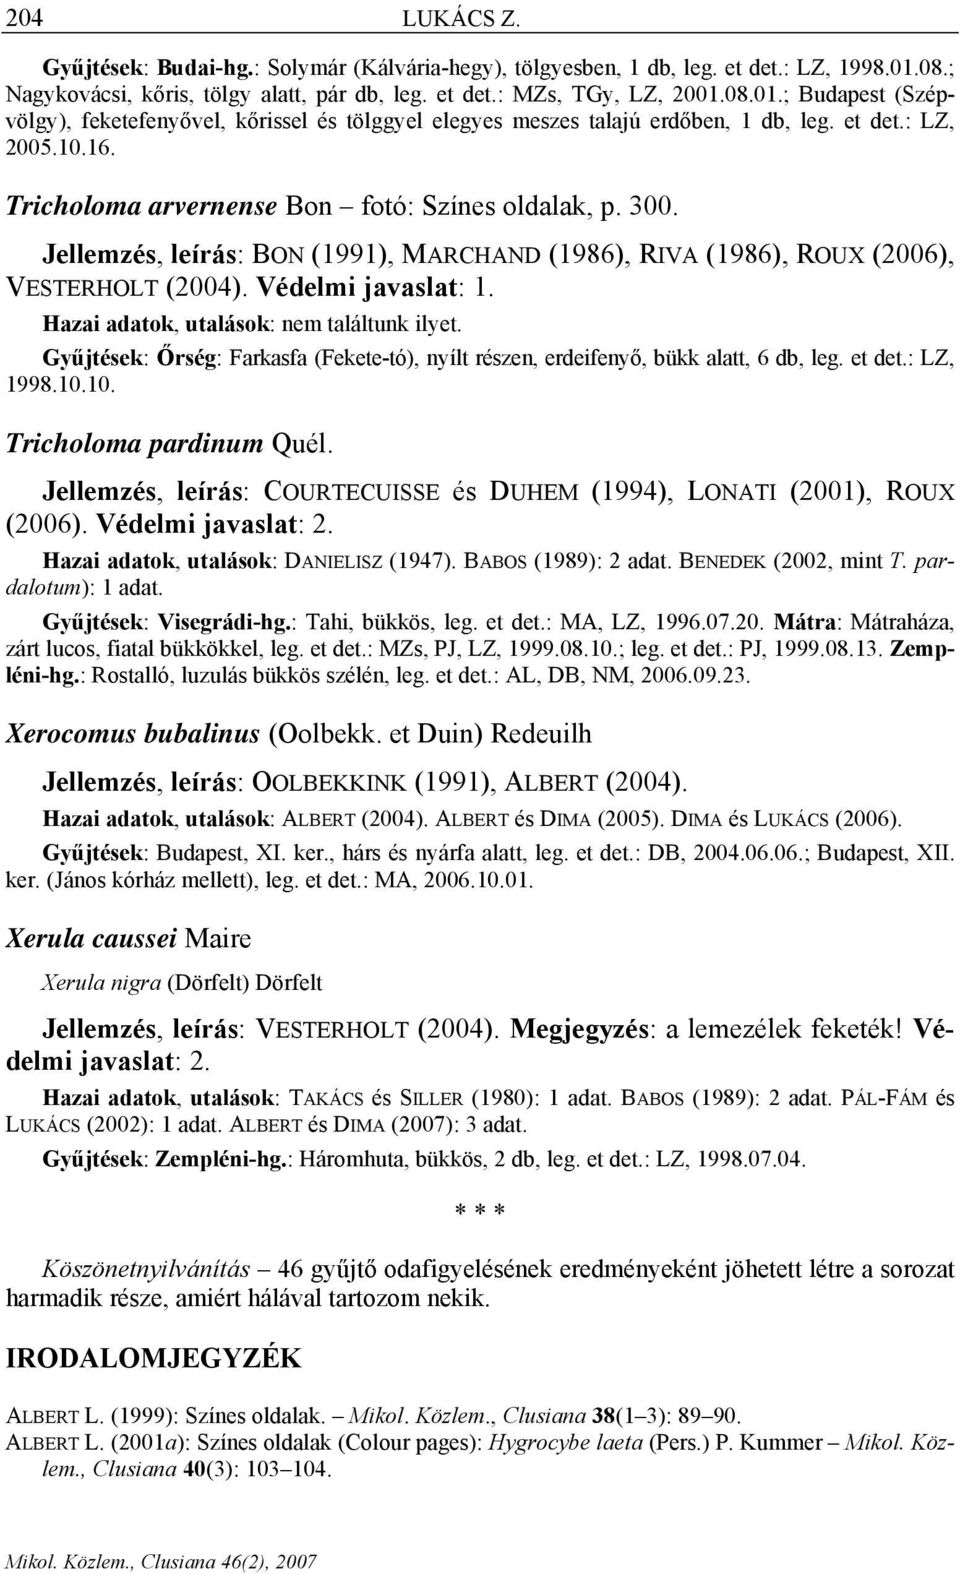 10.16. Tricholoma arvernense Bon fotó: Színes oldalak, p. 300. Jellemzés, leírás: BON (1991), MARCHAND (1986), RIVA (1986), ROUX (2006), VESTERHOLT (2004). Védelmi javaslat: 1.